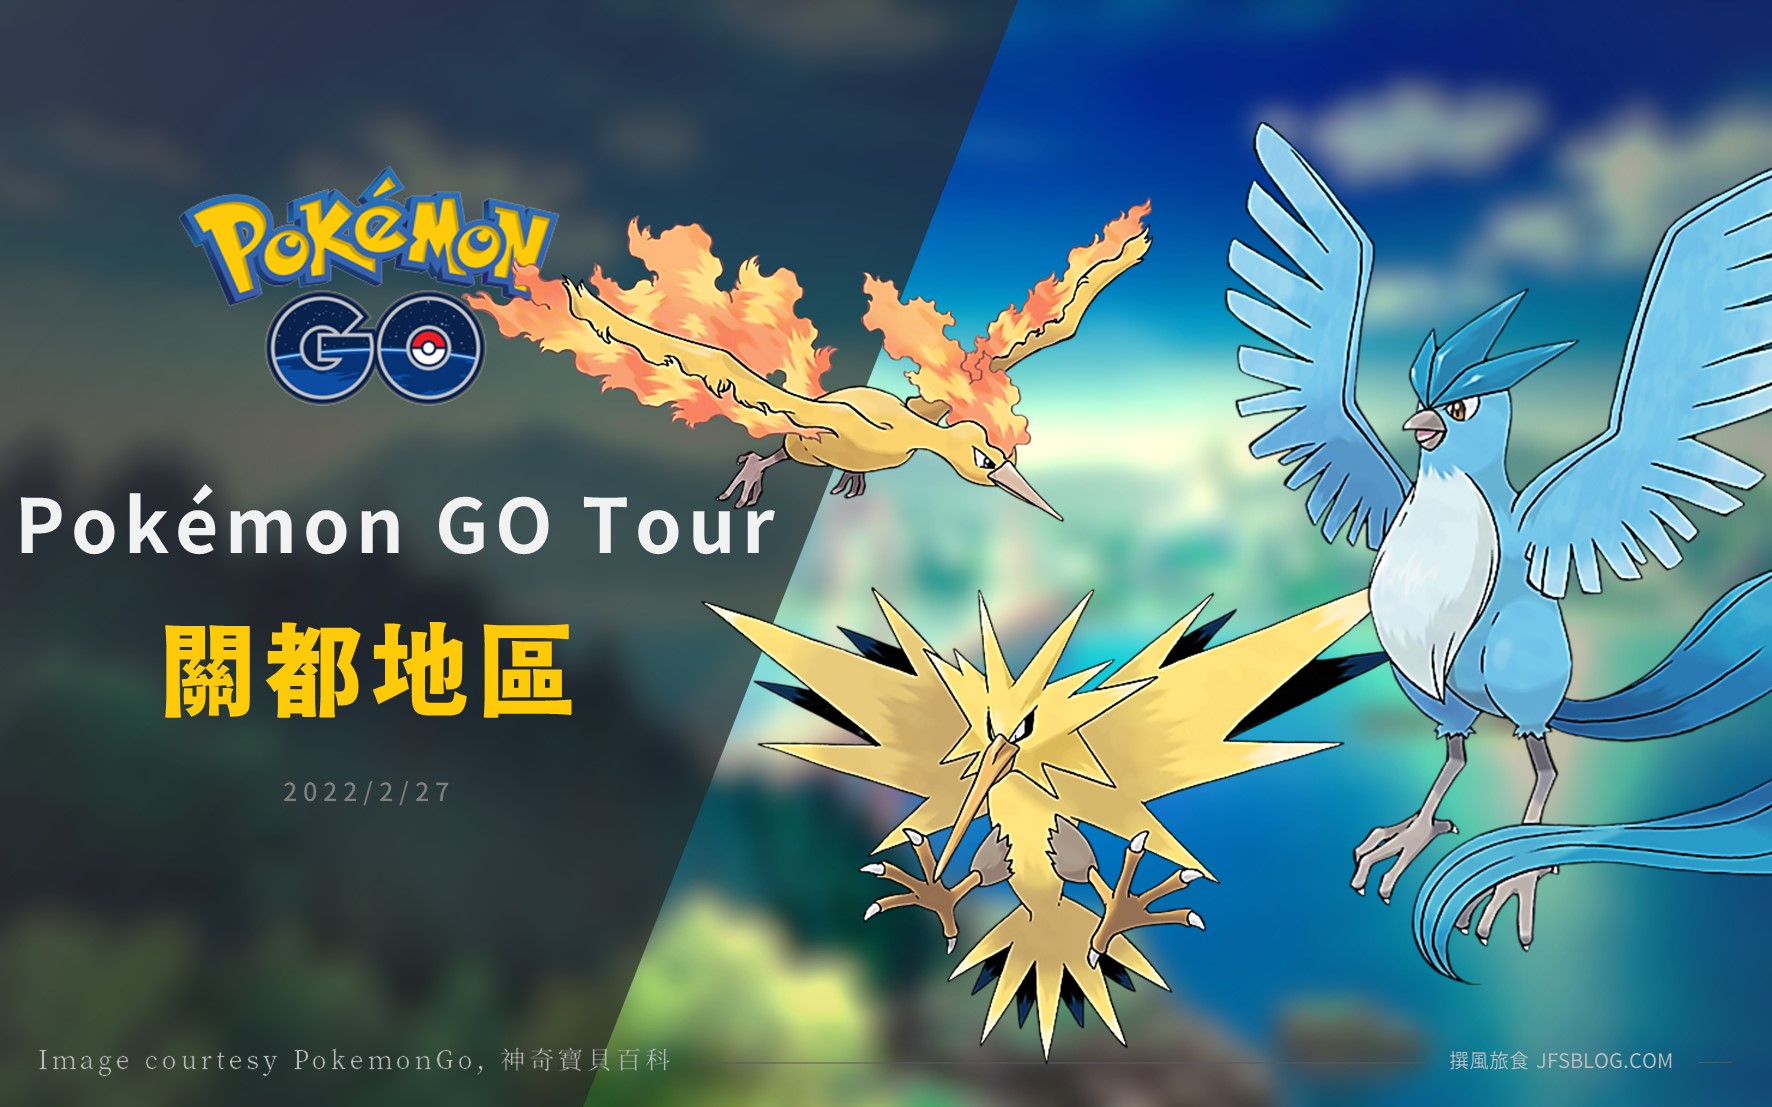 Pokemon GO／Pokémon GO Tour 關都地區